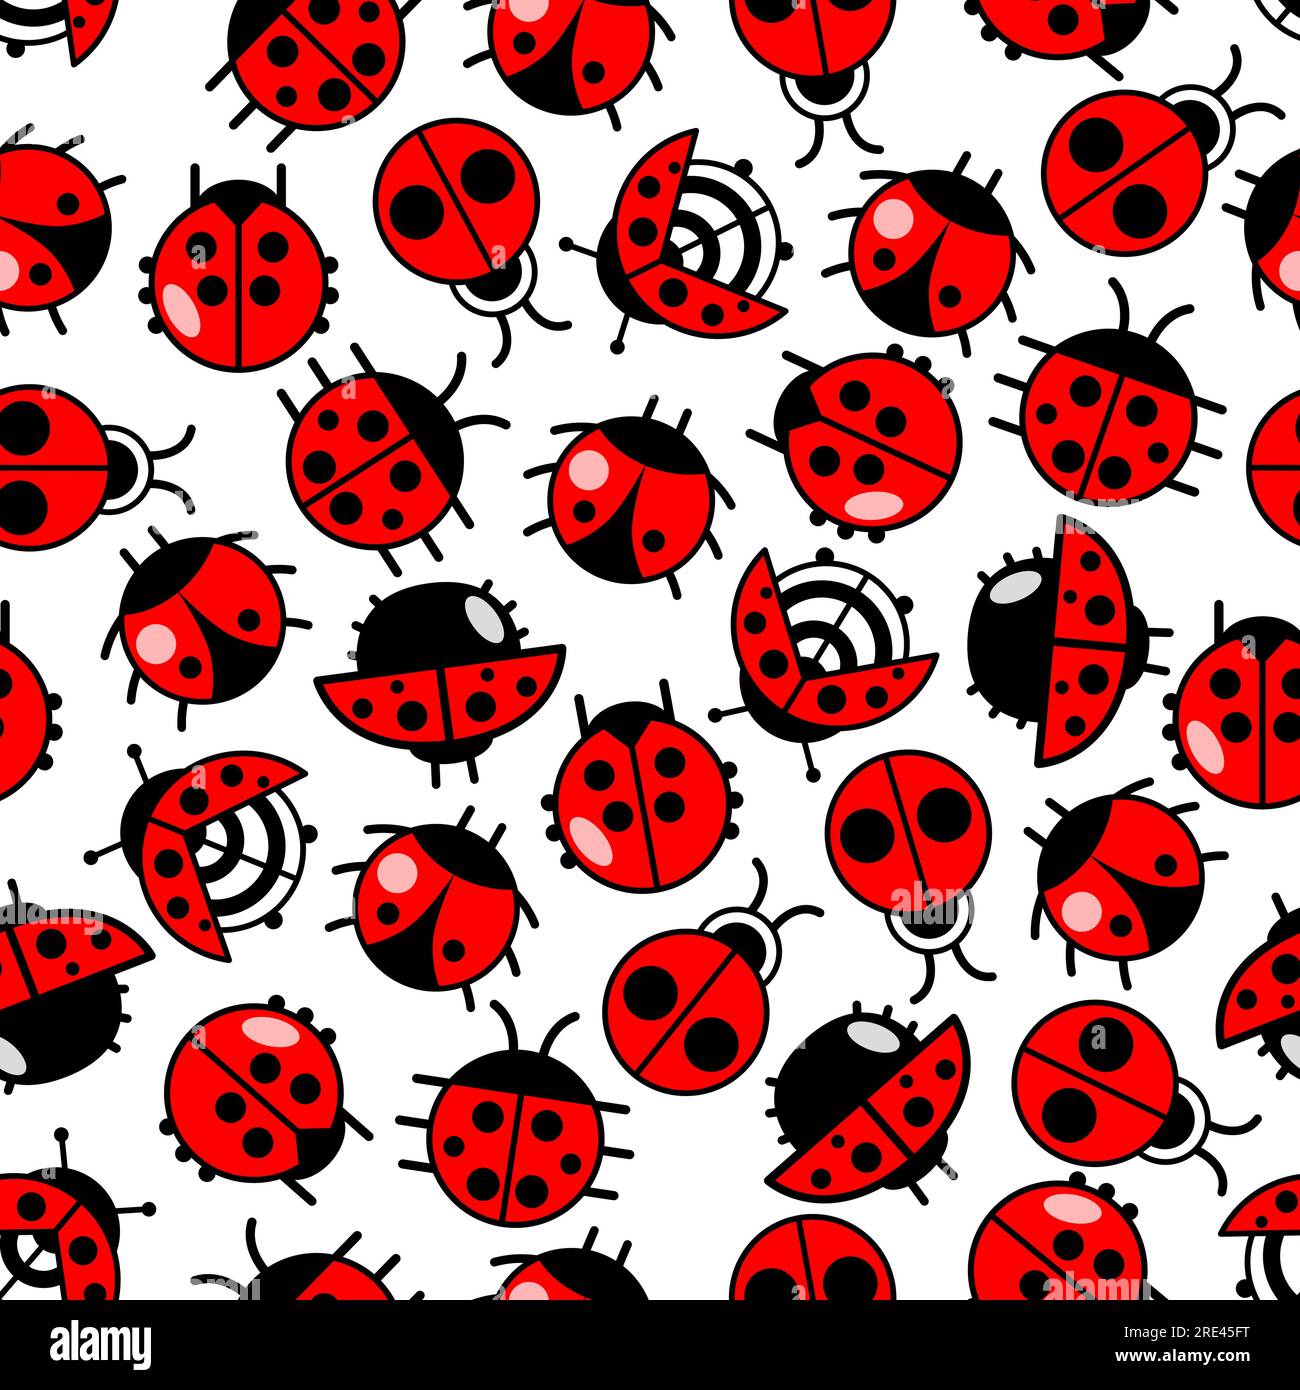 Scarabei da ladybird brillanti e senza cuciture con coccinelle striscianti su sfondo bianco con coperture alari rosse e nere. Può essere utilizzato come sfondo per la stampa di tessuti o per la stampa di pagine di album Illustrazione Vettoriale